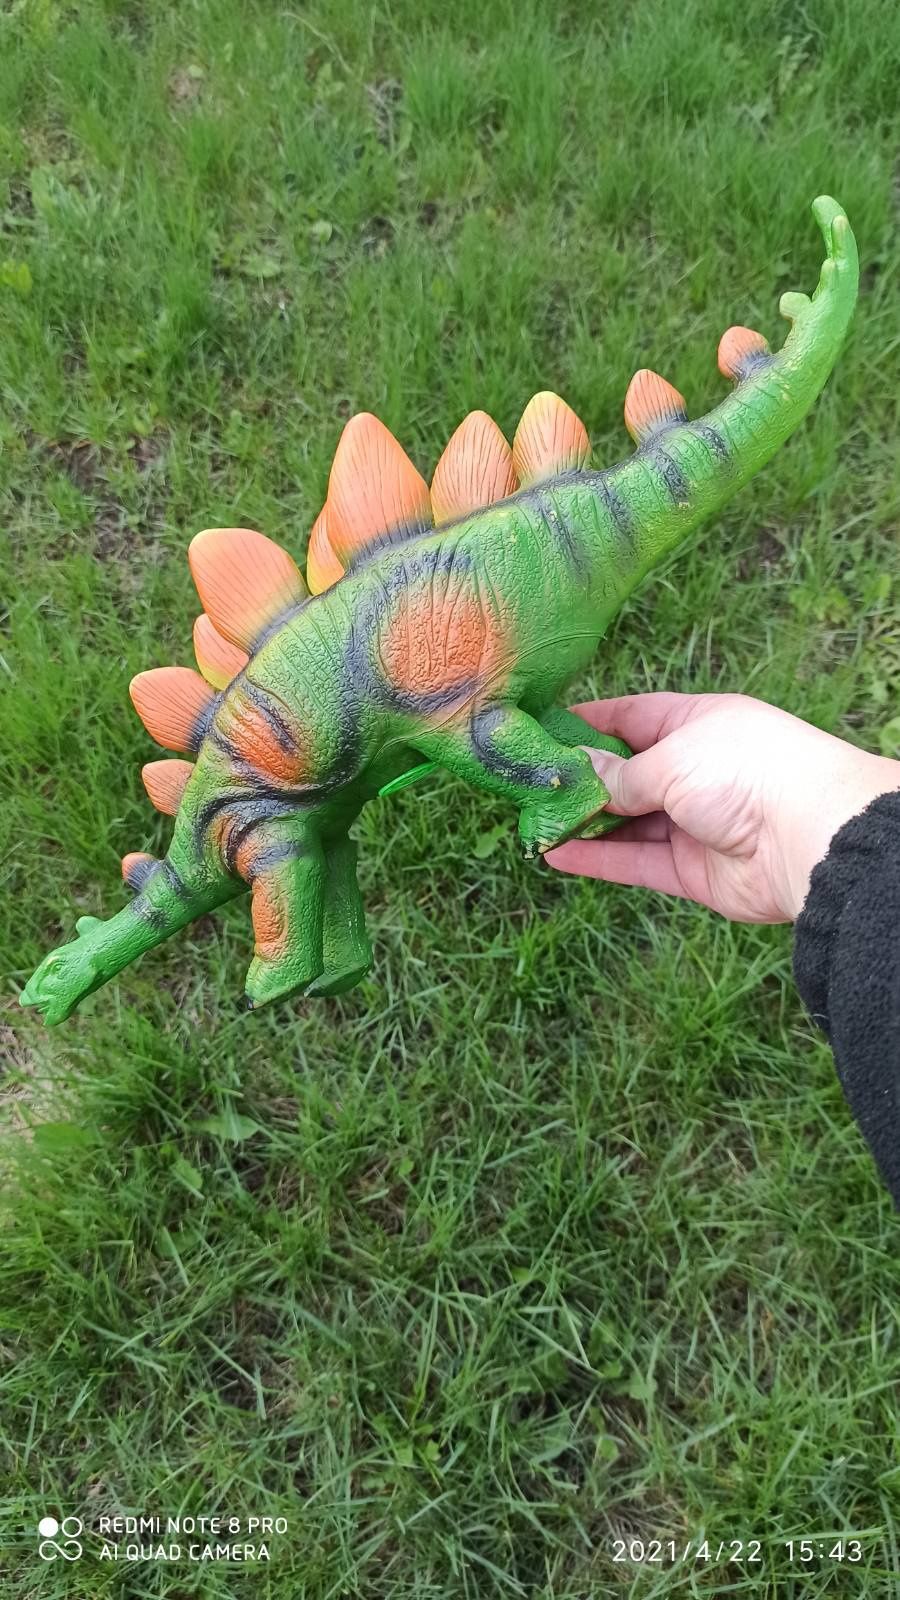 Продам динозавров